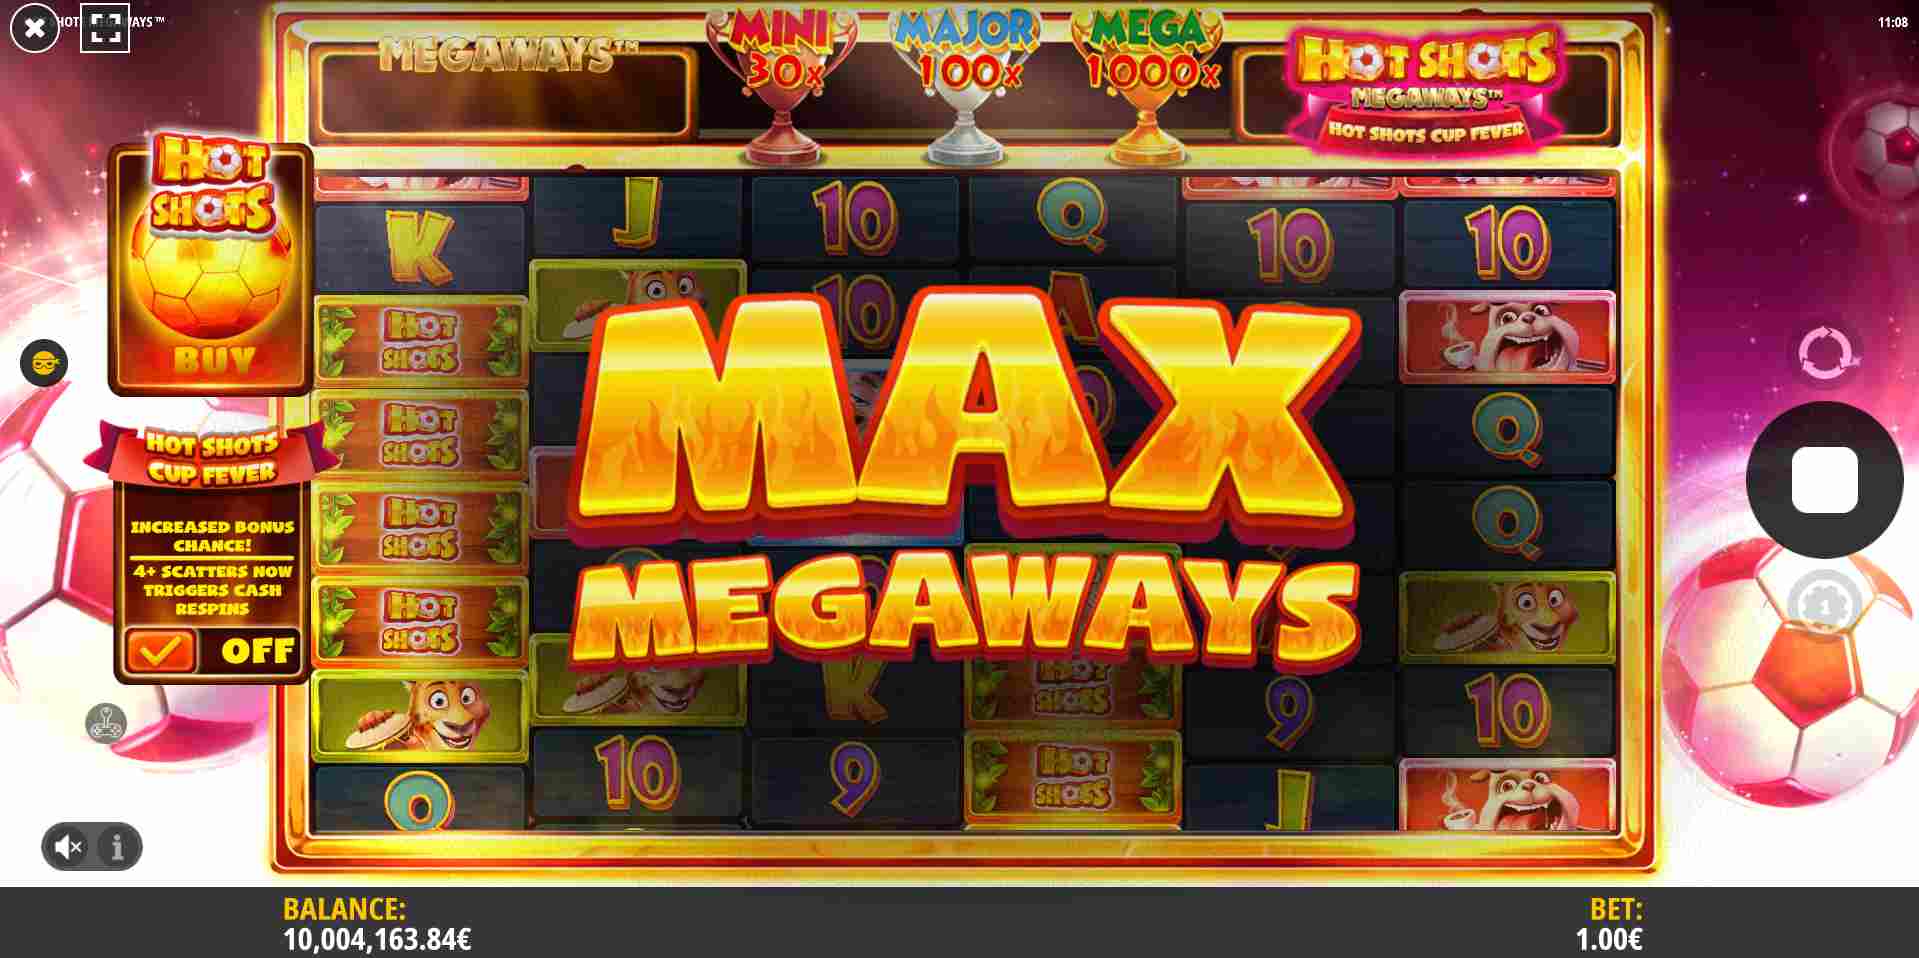 Hot Shots Megaways - Max Megaways